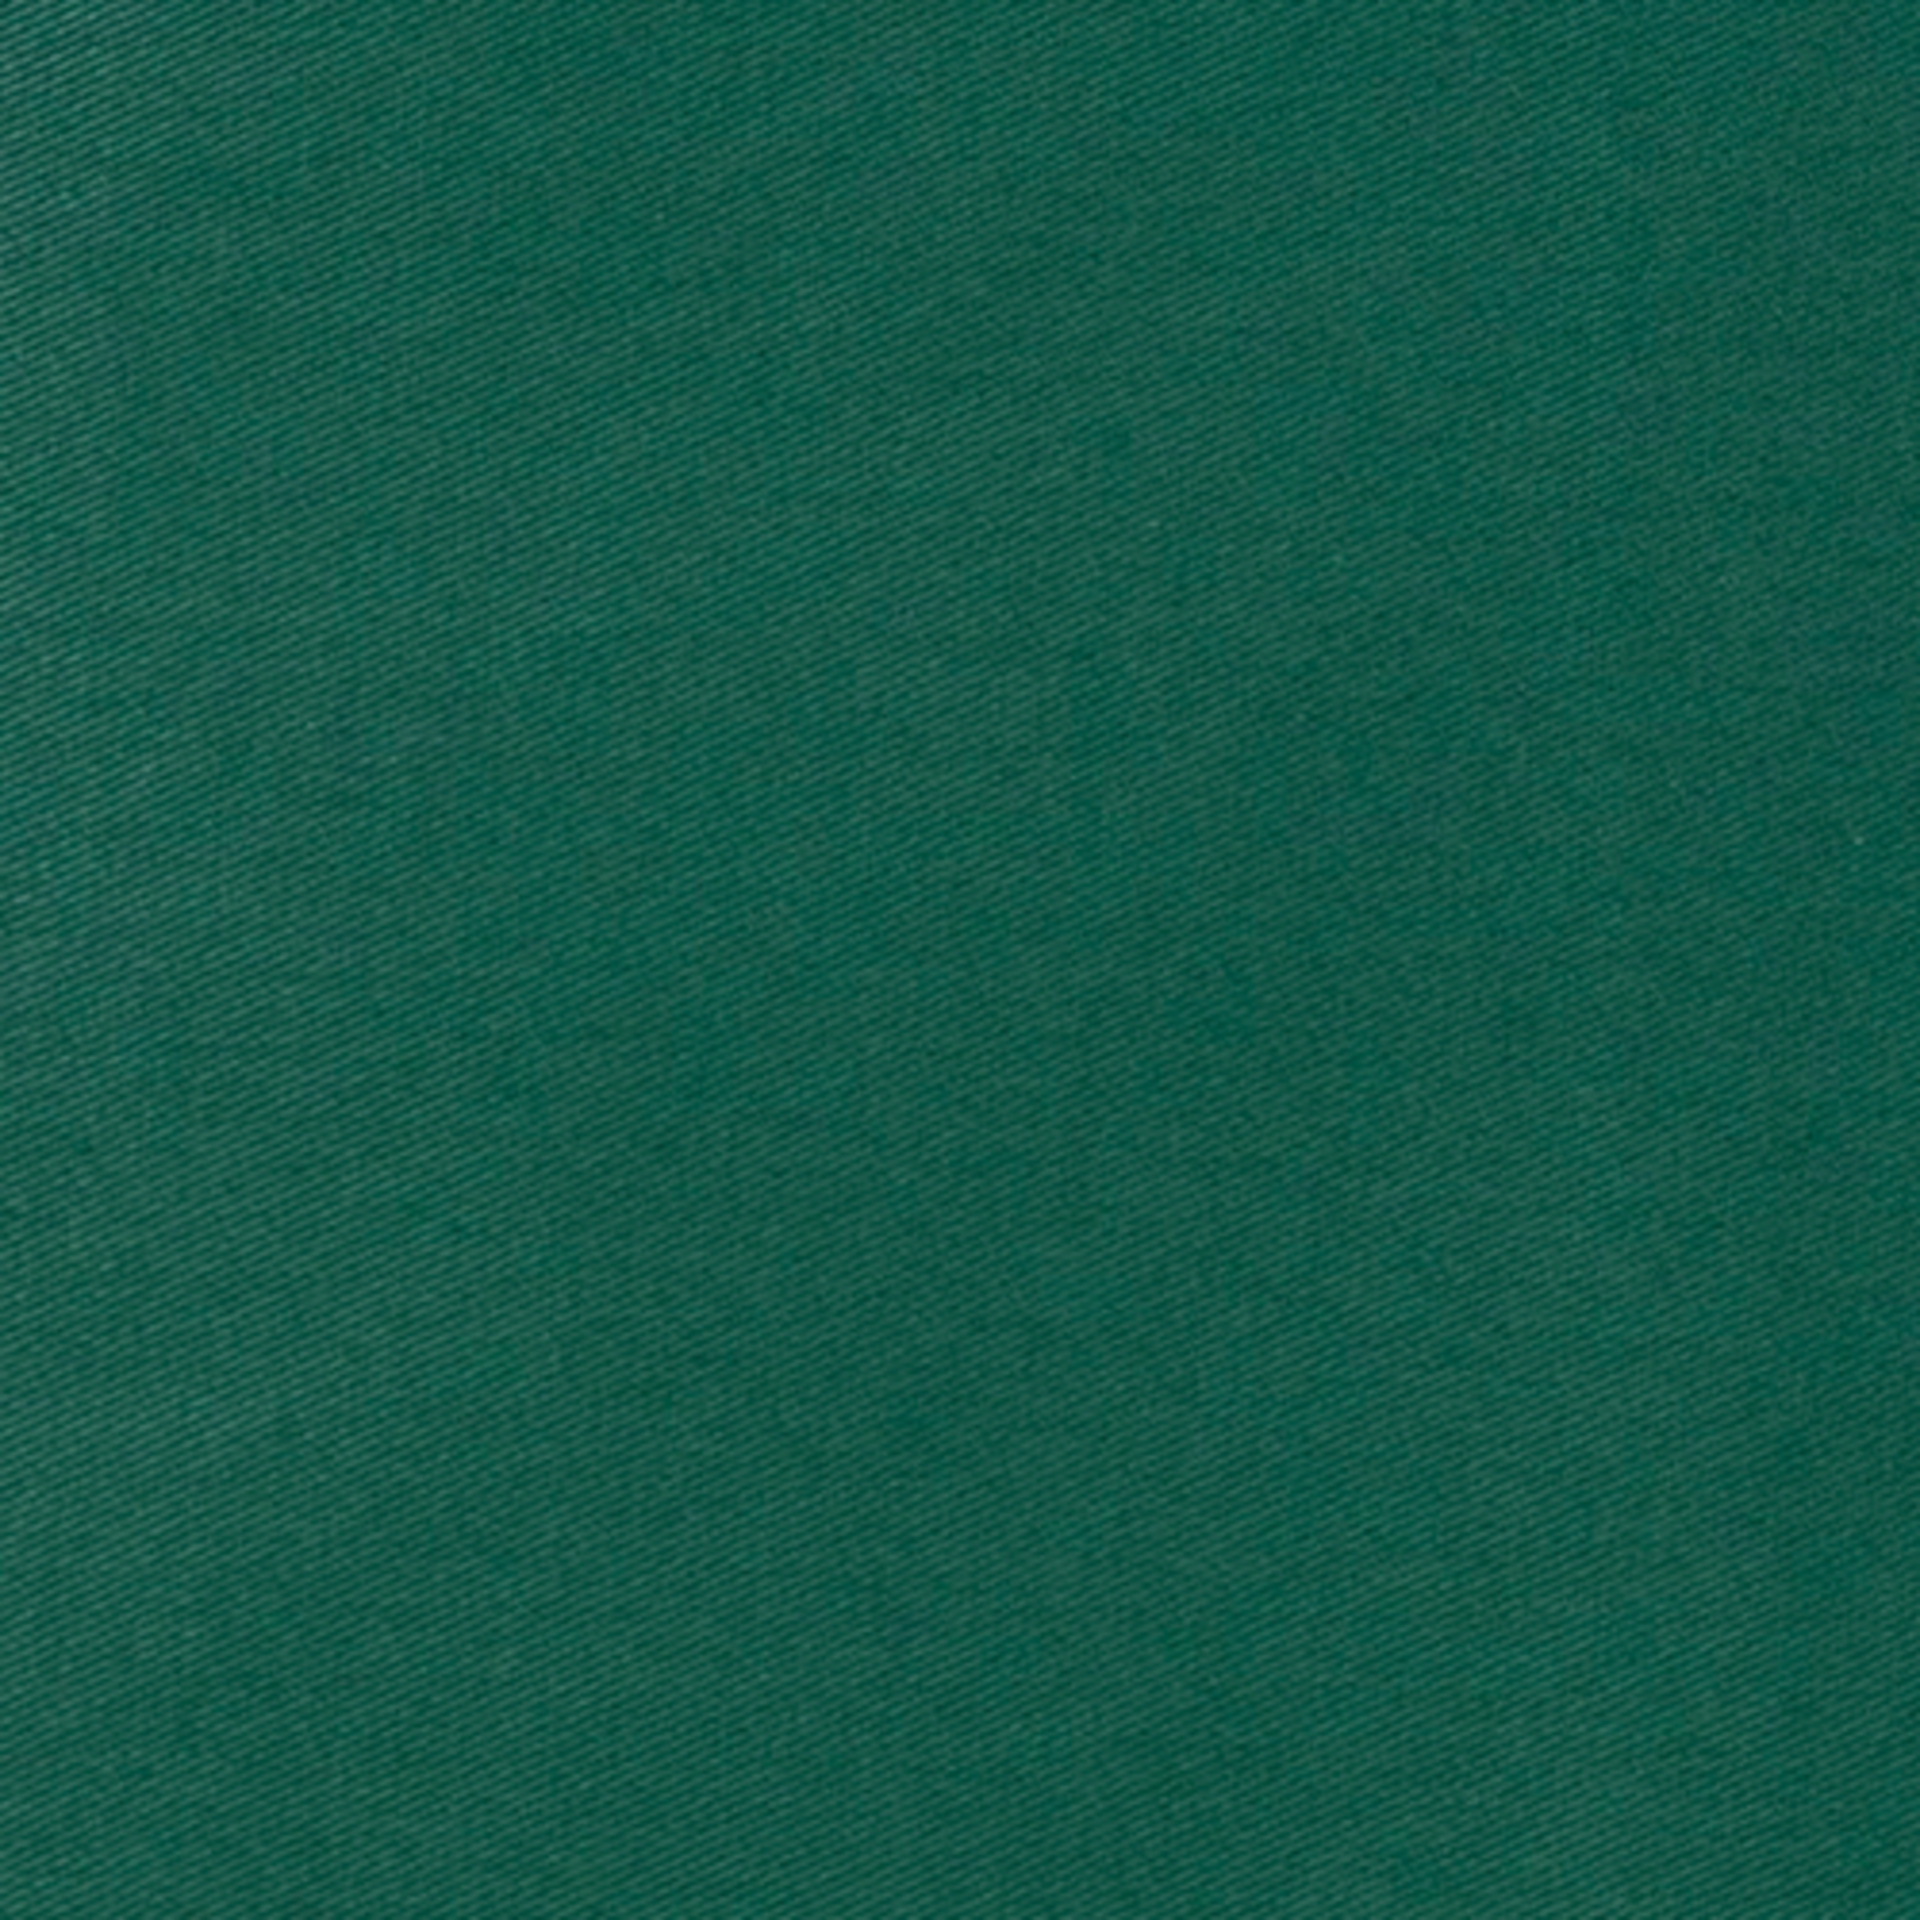 Zástěra řemeslnická s náprsenkou, pevný pásek tmavě zelená 